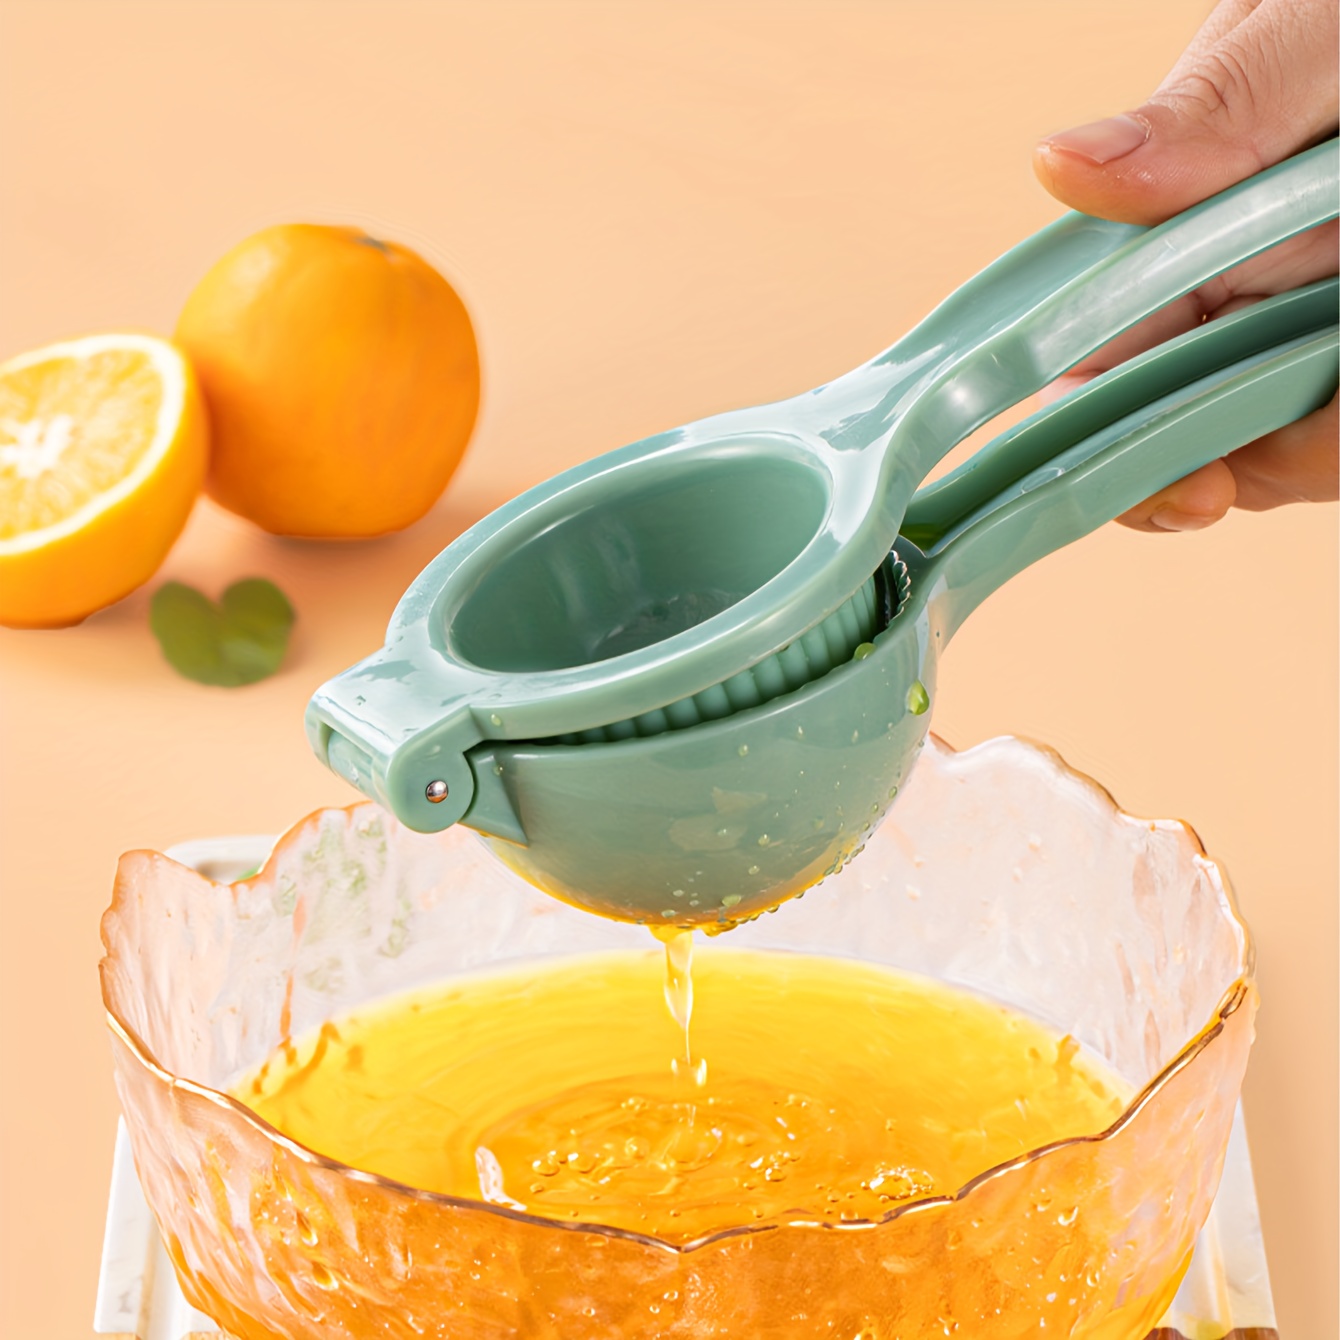 

Easy-squeeze Manual Citrus Juicer - Durable Plastic Lemon & Orange Squeezer, Portable Kitchen Gadget For Fresh Fruit Juice